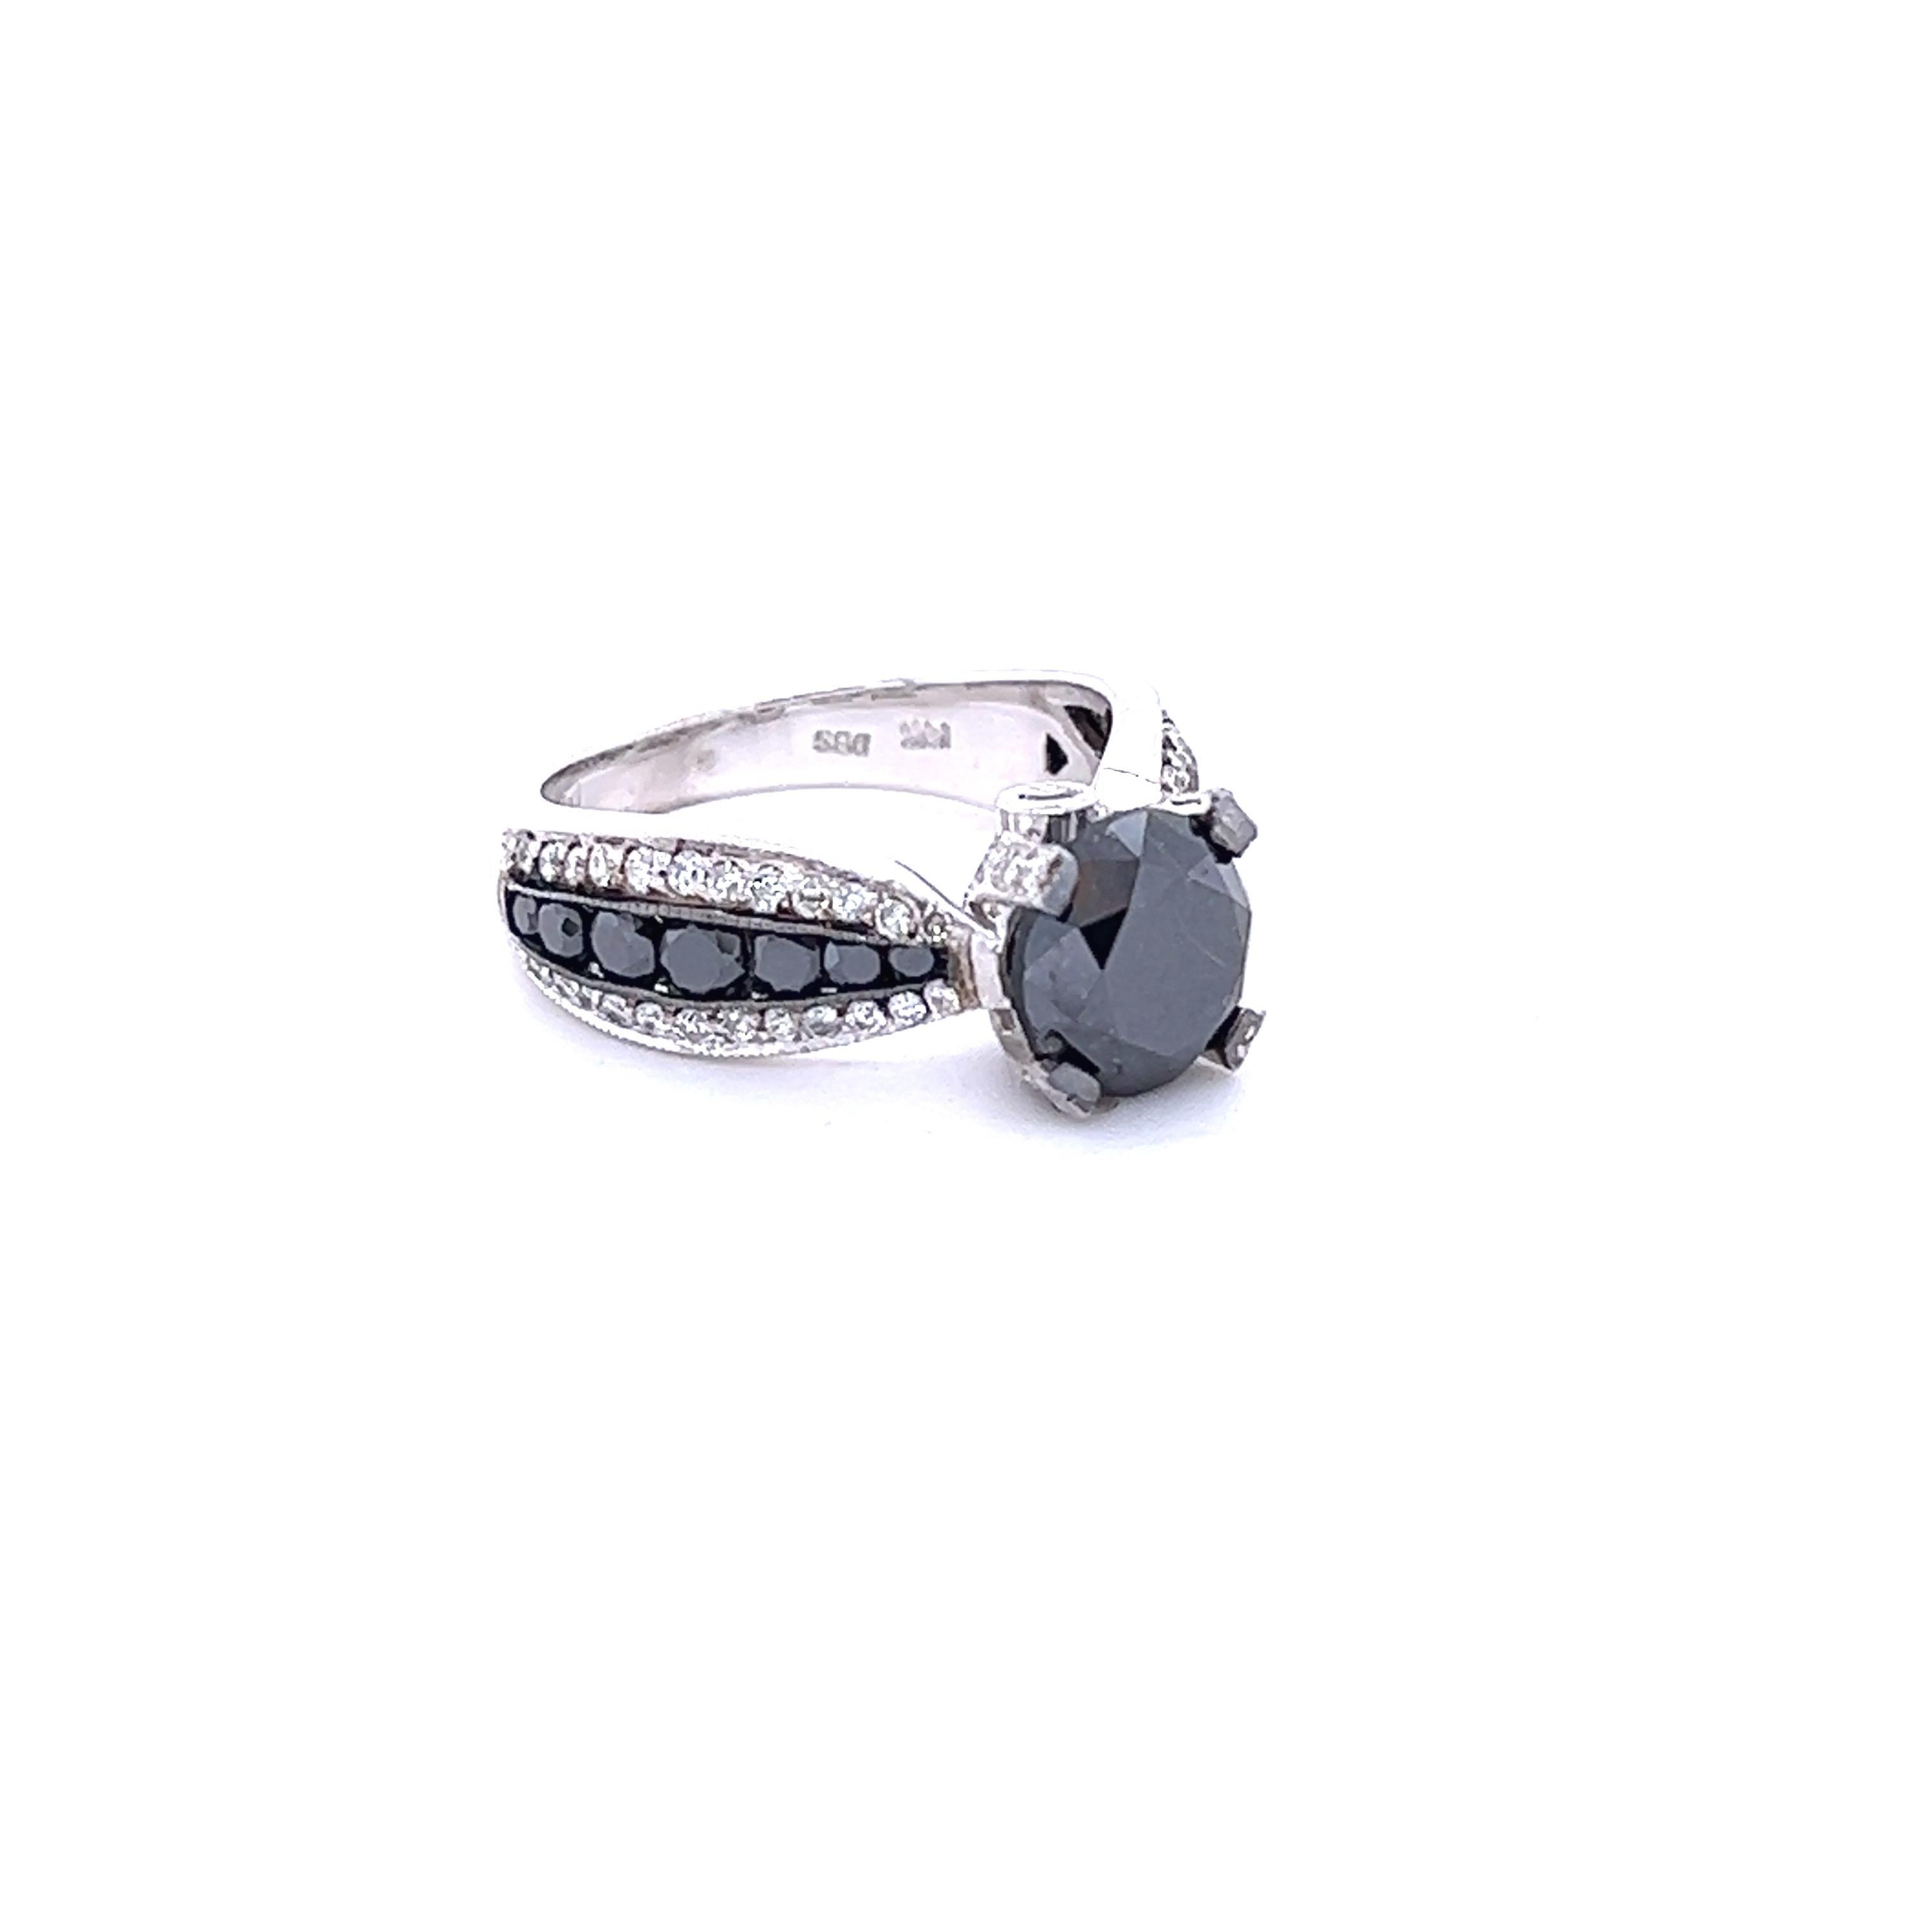 Der schwarze Diamant im Rundschliff hat 2,77 Karat und misst etwa 8 mm. Die Fassung enthält 14 schwarze Diamanten im Rundschliff mit einem Gewicht von 0,71 Karat und 66 Diamanten im Rundschliff mit einem Gewicht von 0,52 Karat. (Reinheit: SI, Farbe: